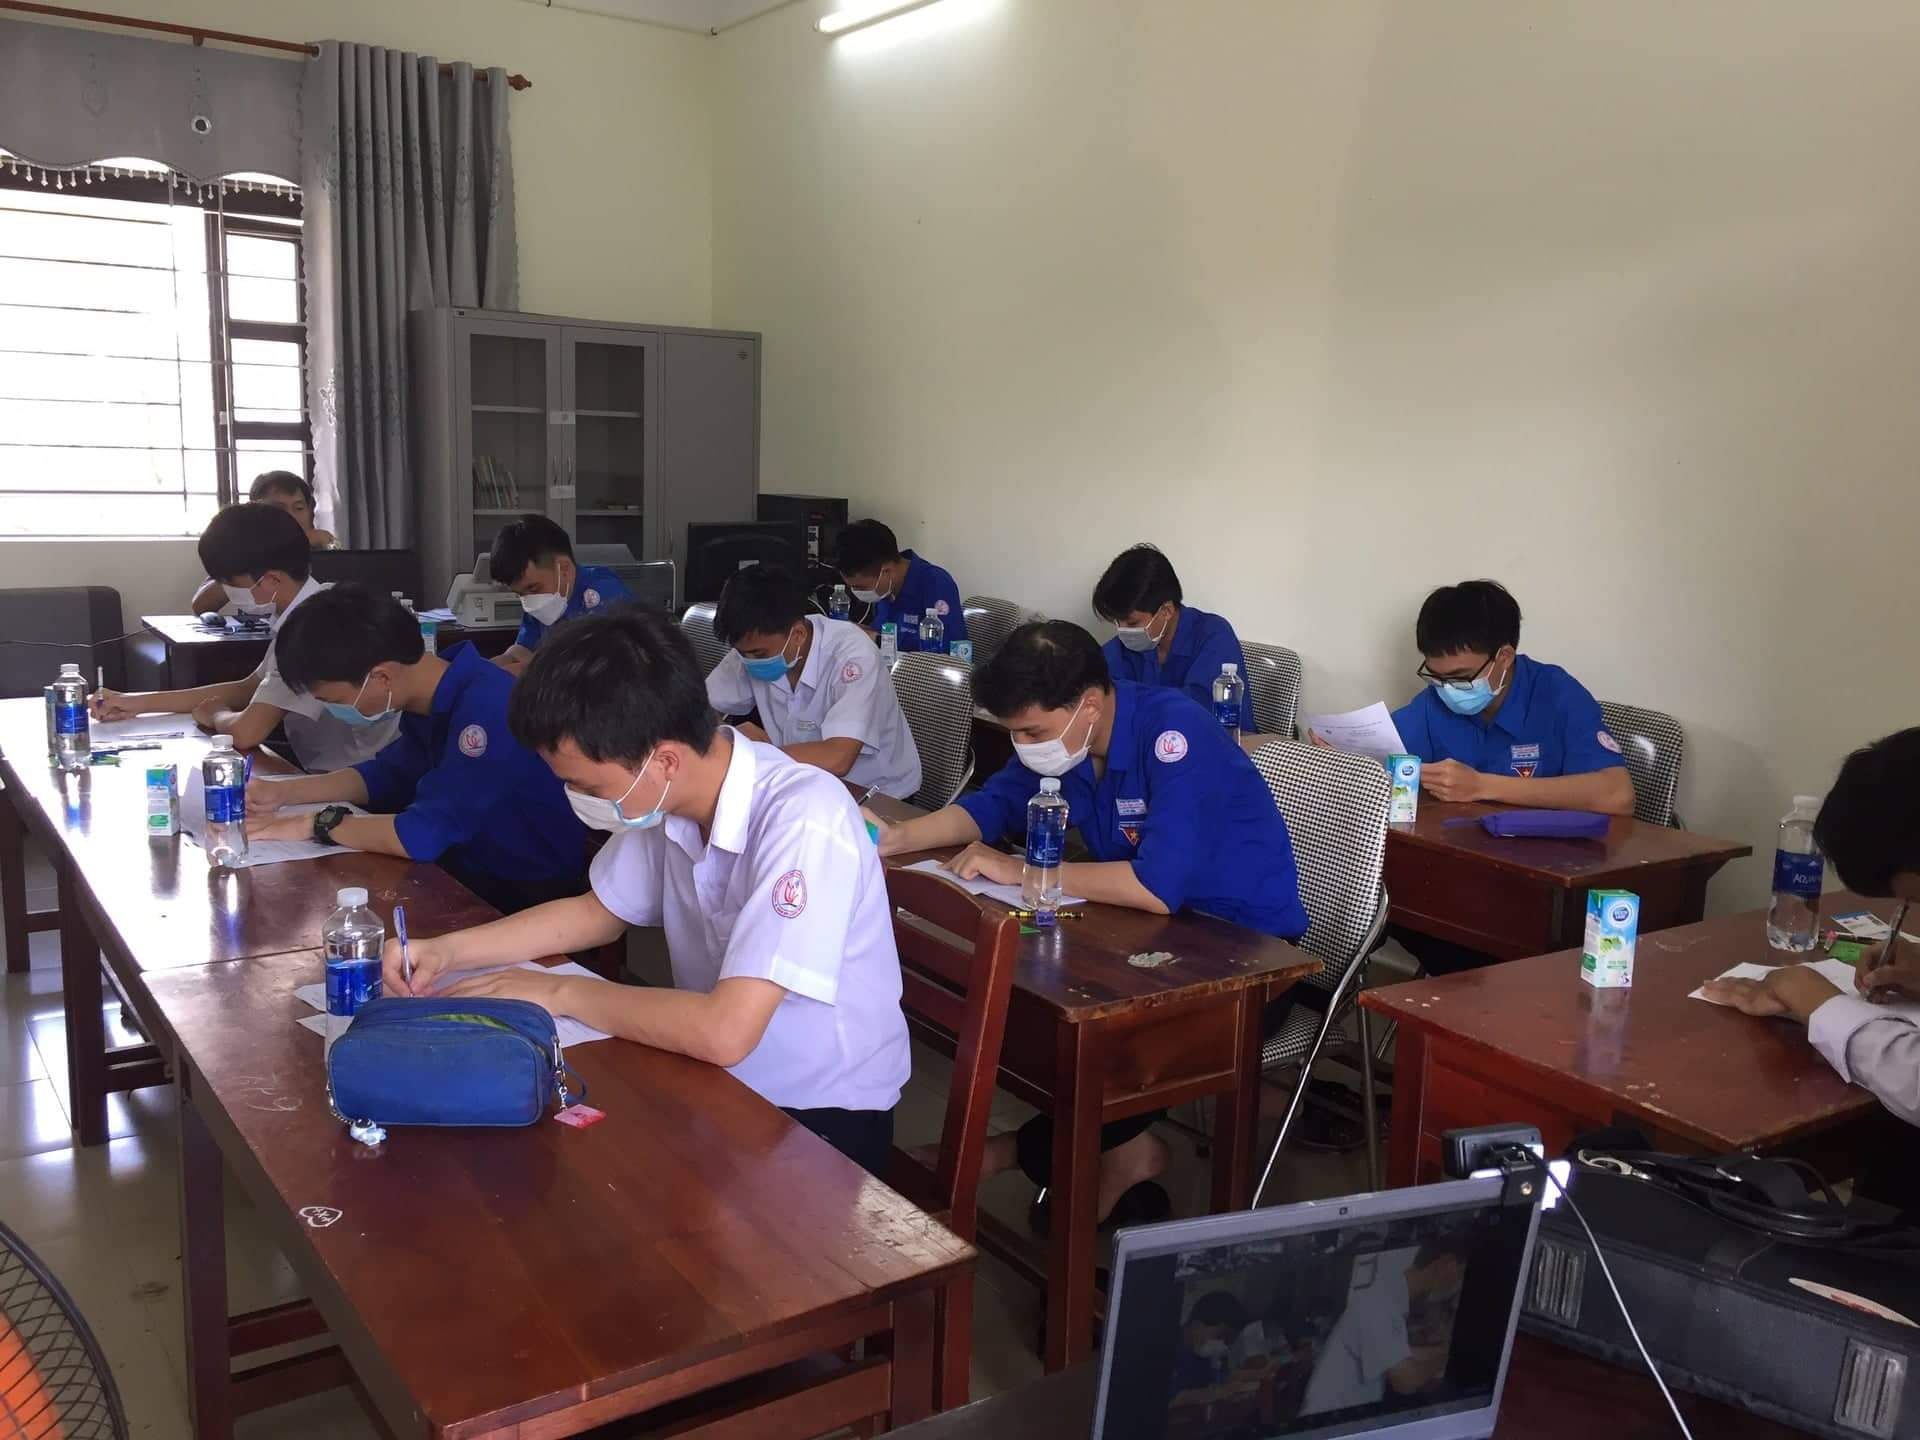 Thí sinh Trường THPT chuyên Nguyễn Bỉnh Khiêm dự kỳ thi Olympic Toán học sinh viên, học sinh toàn quốc lần thứ 28 năm 2022. Ảnh nhà trường cung cấp.